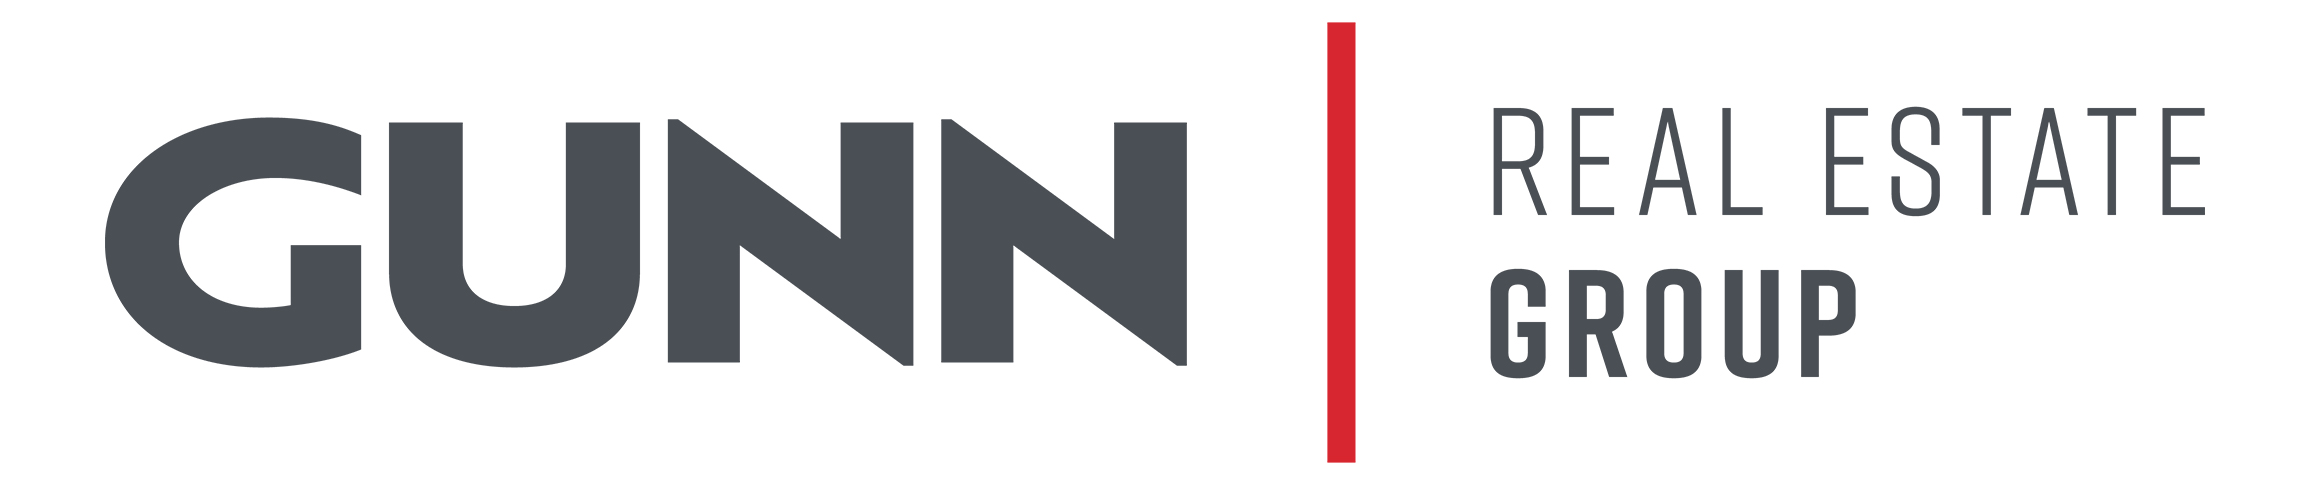 Logotipo de bienes raíces de Gunn